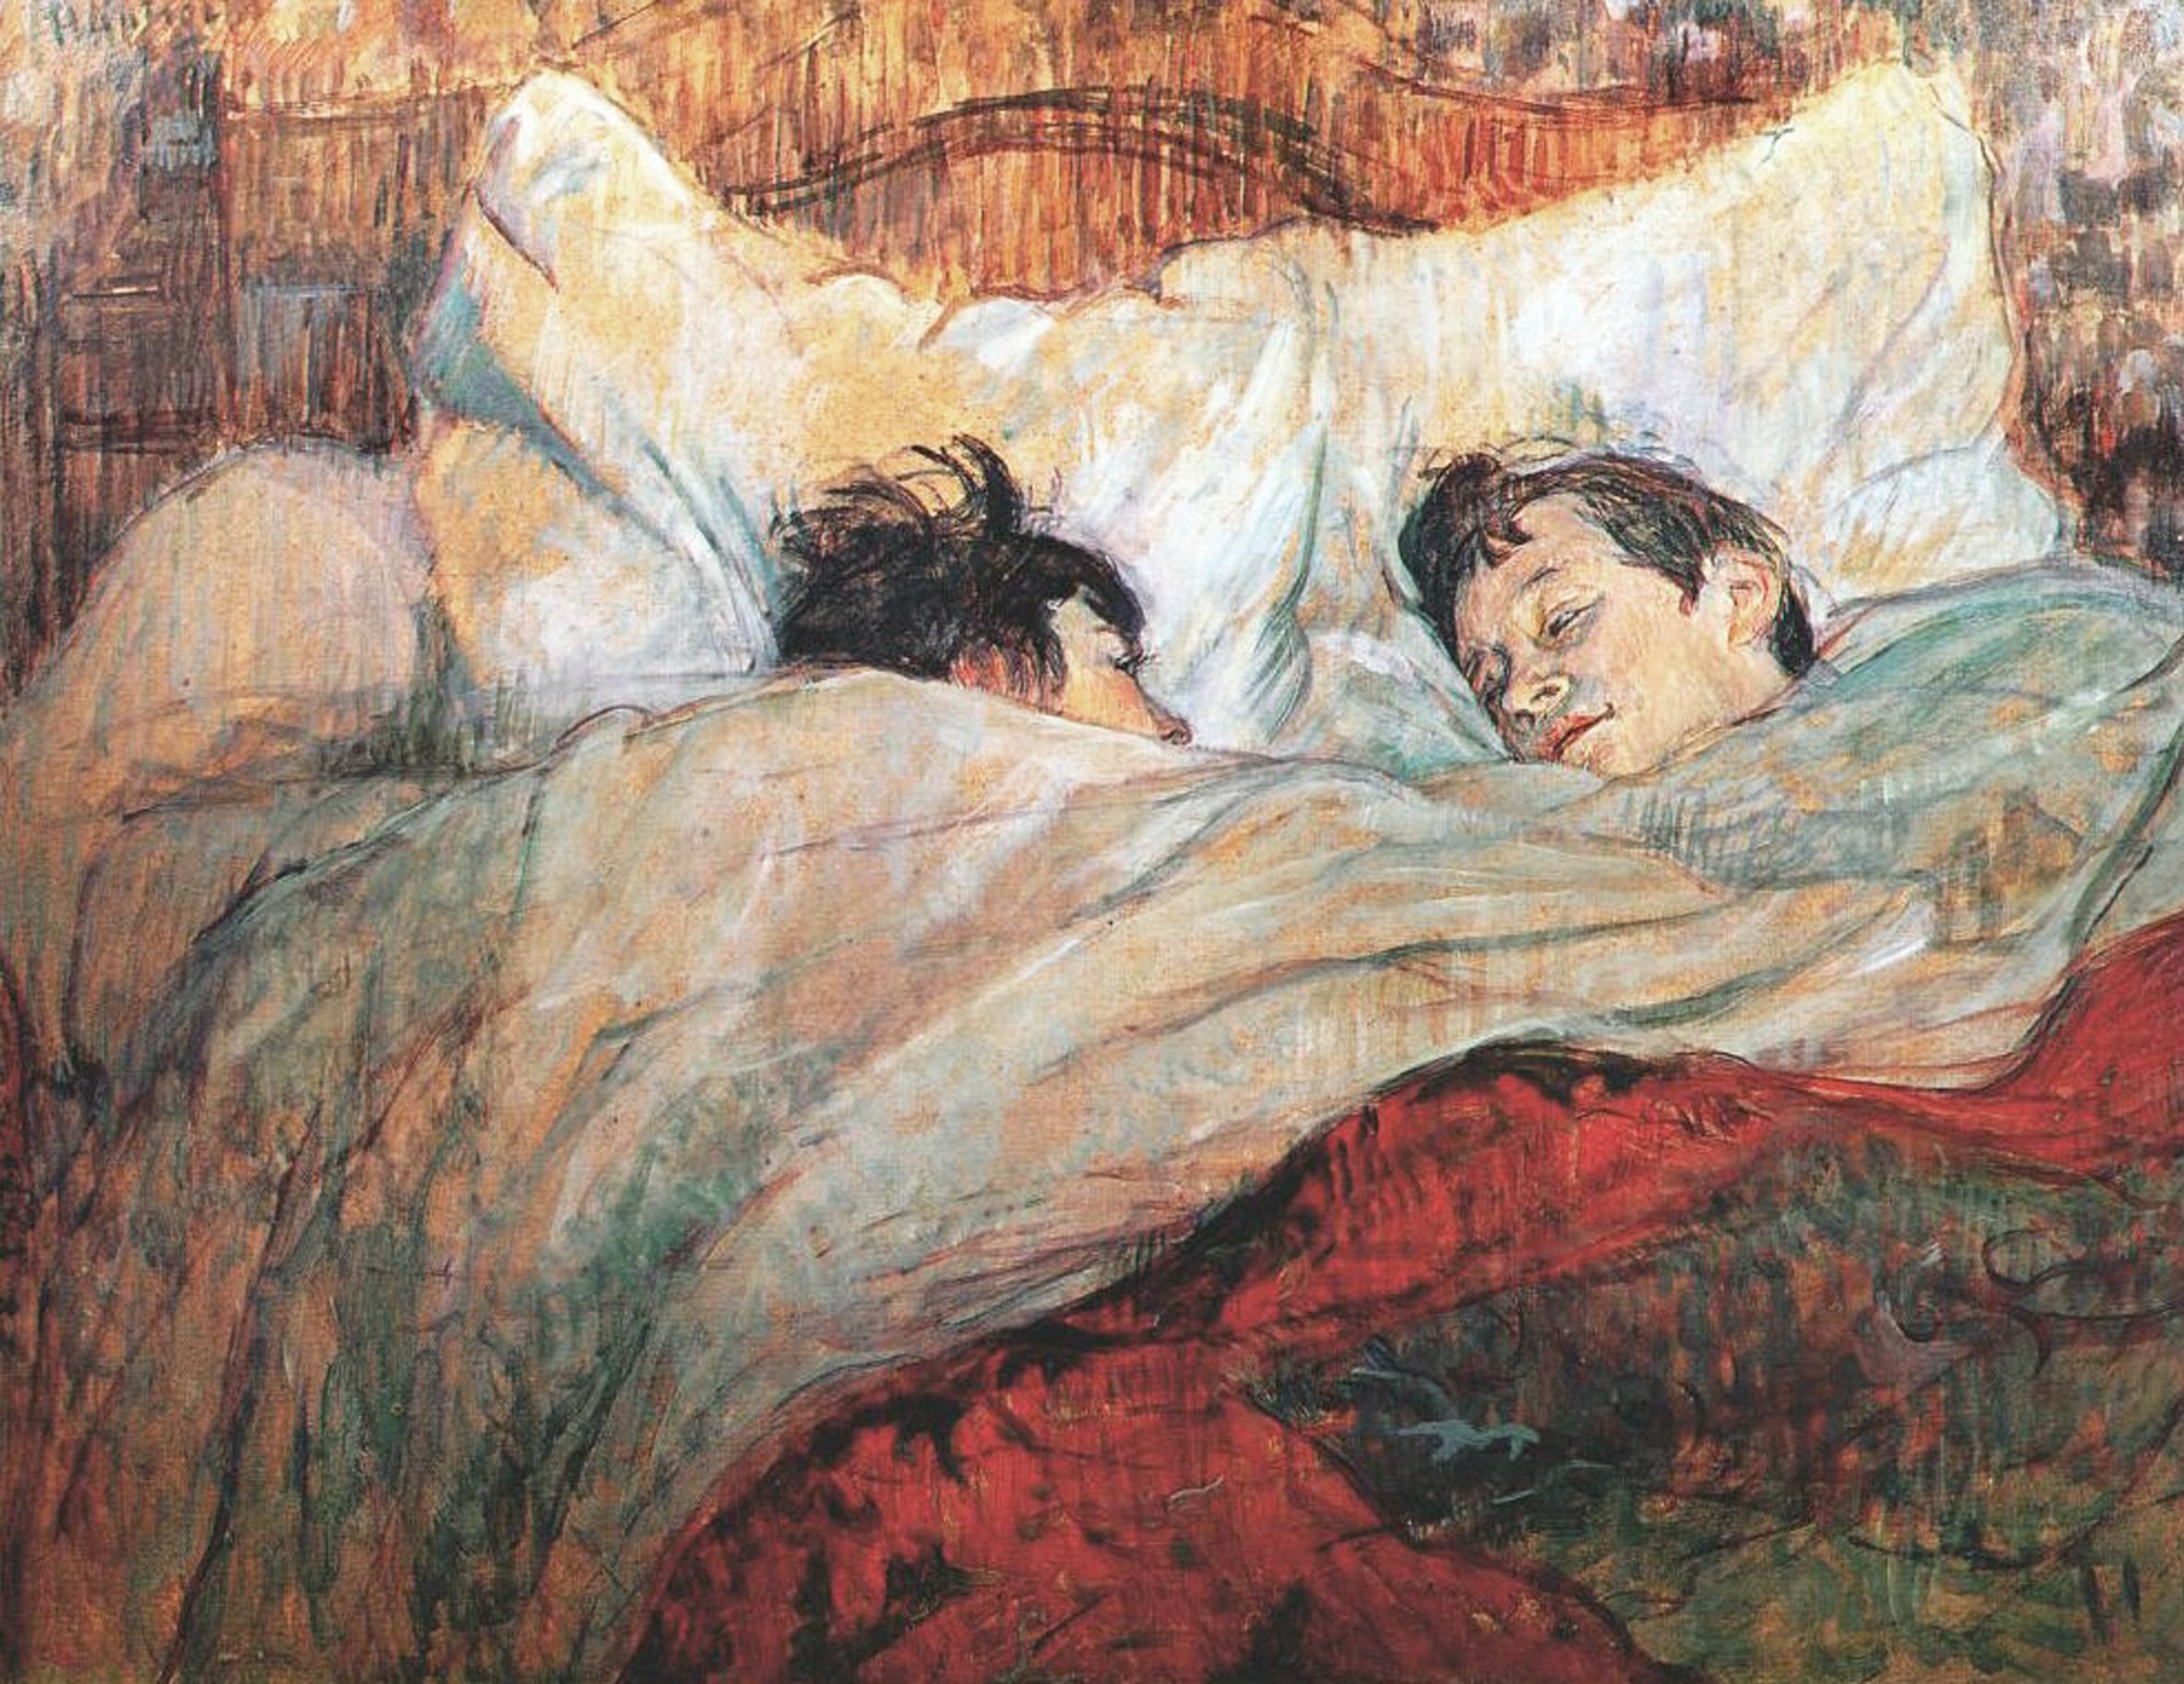 http://en.wikipedia.org/wiki/File:Lautrec_in_bed_1893.jpg